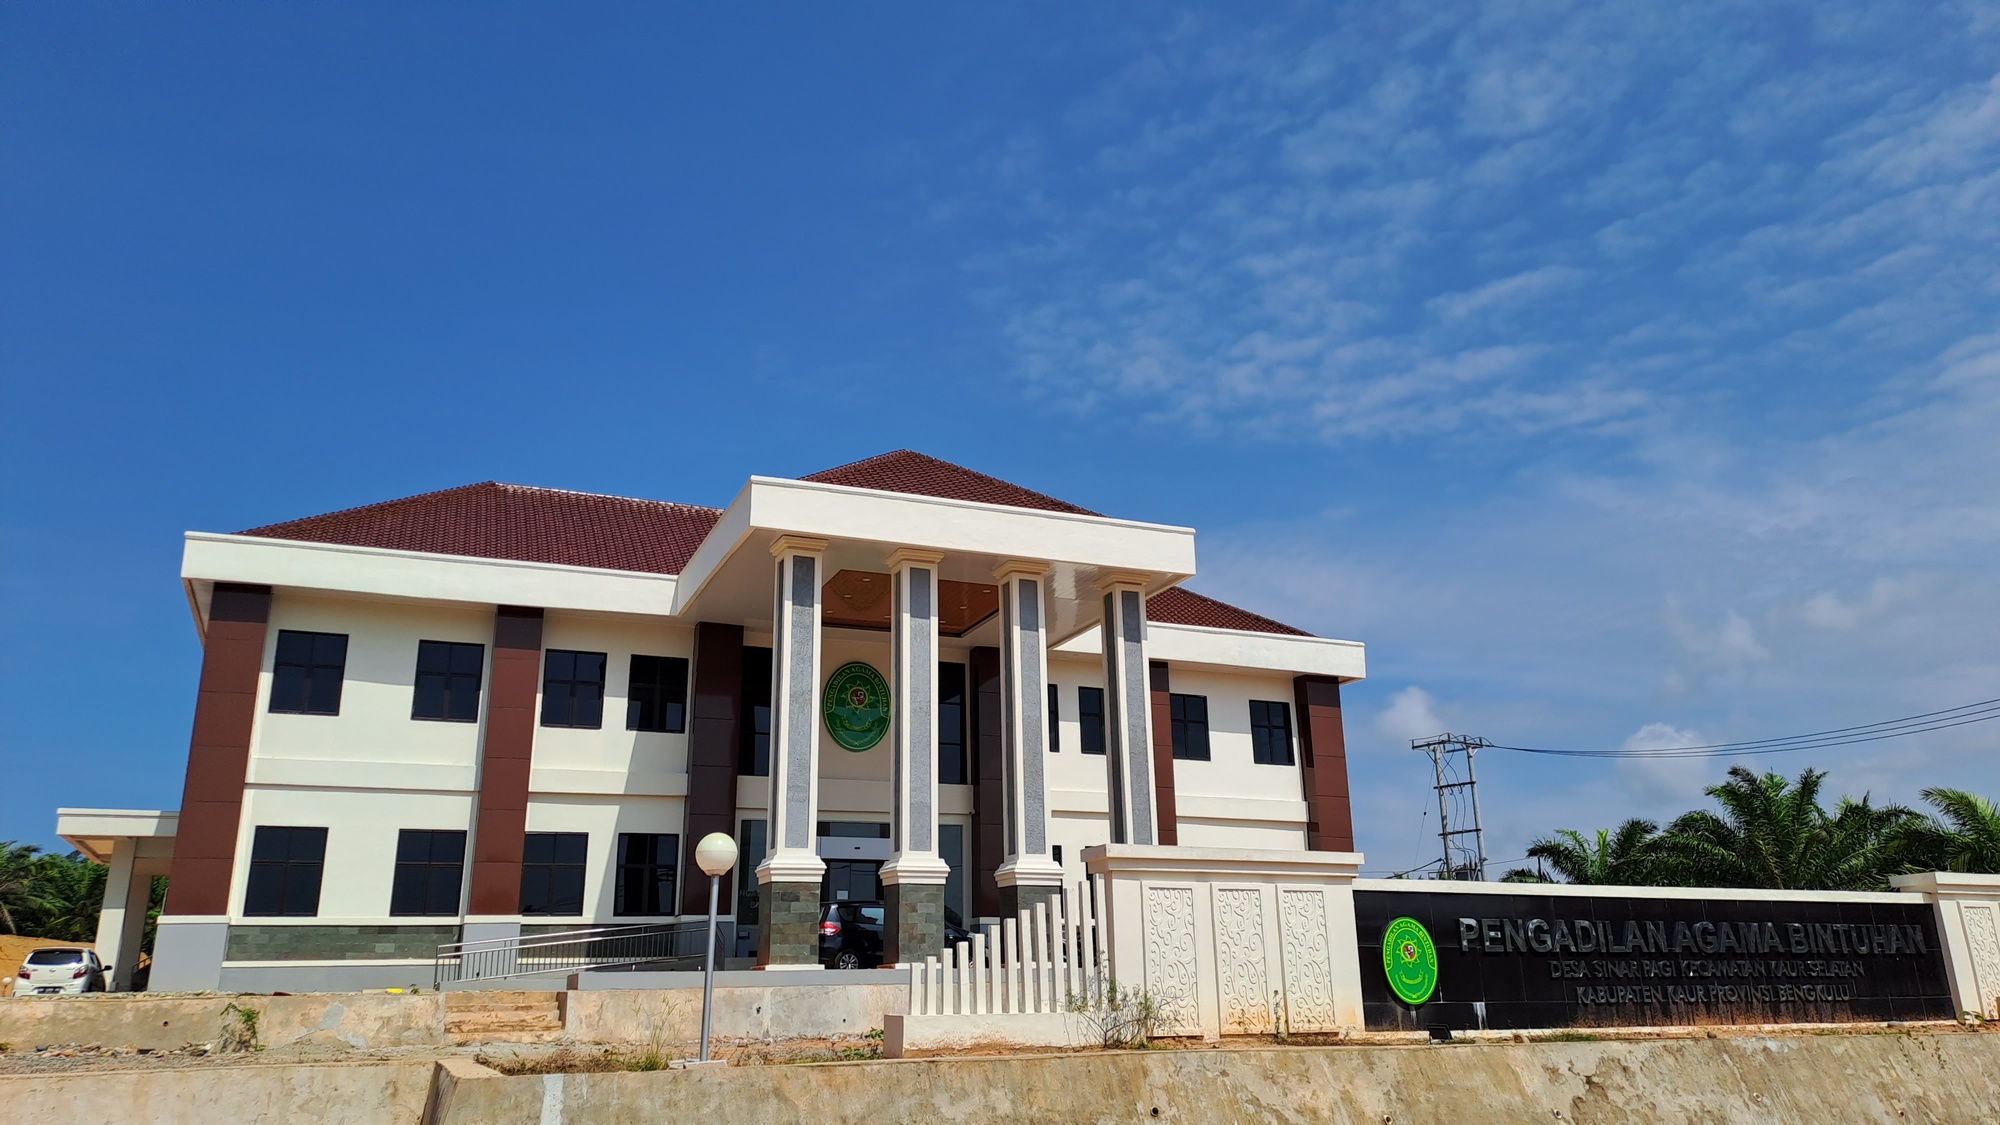 Foto Gedung PA Bintuhan 2020